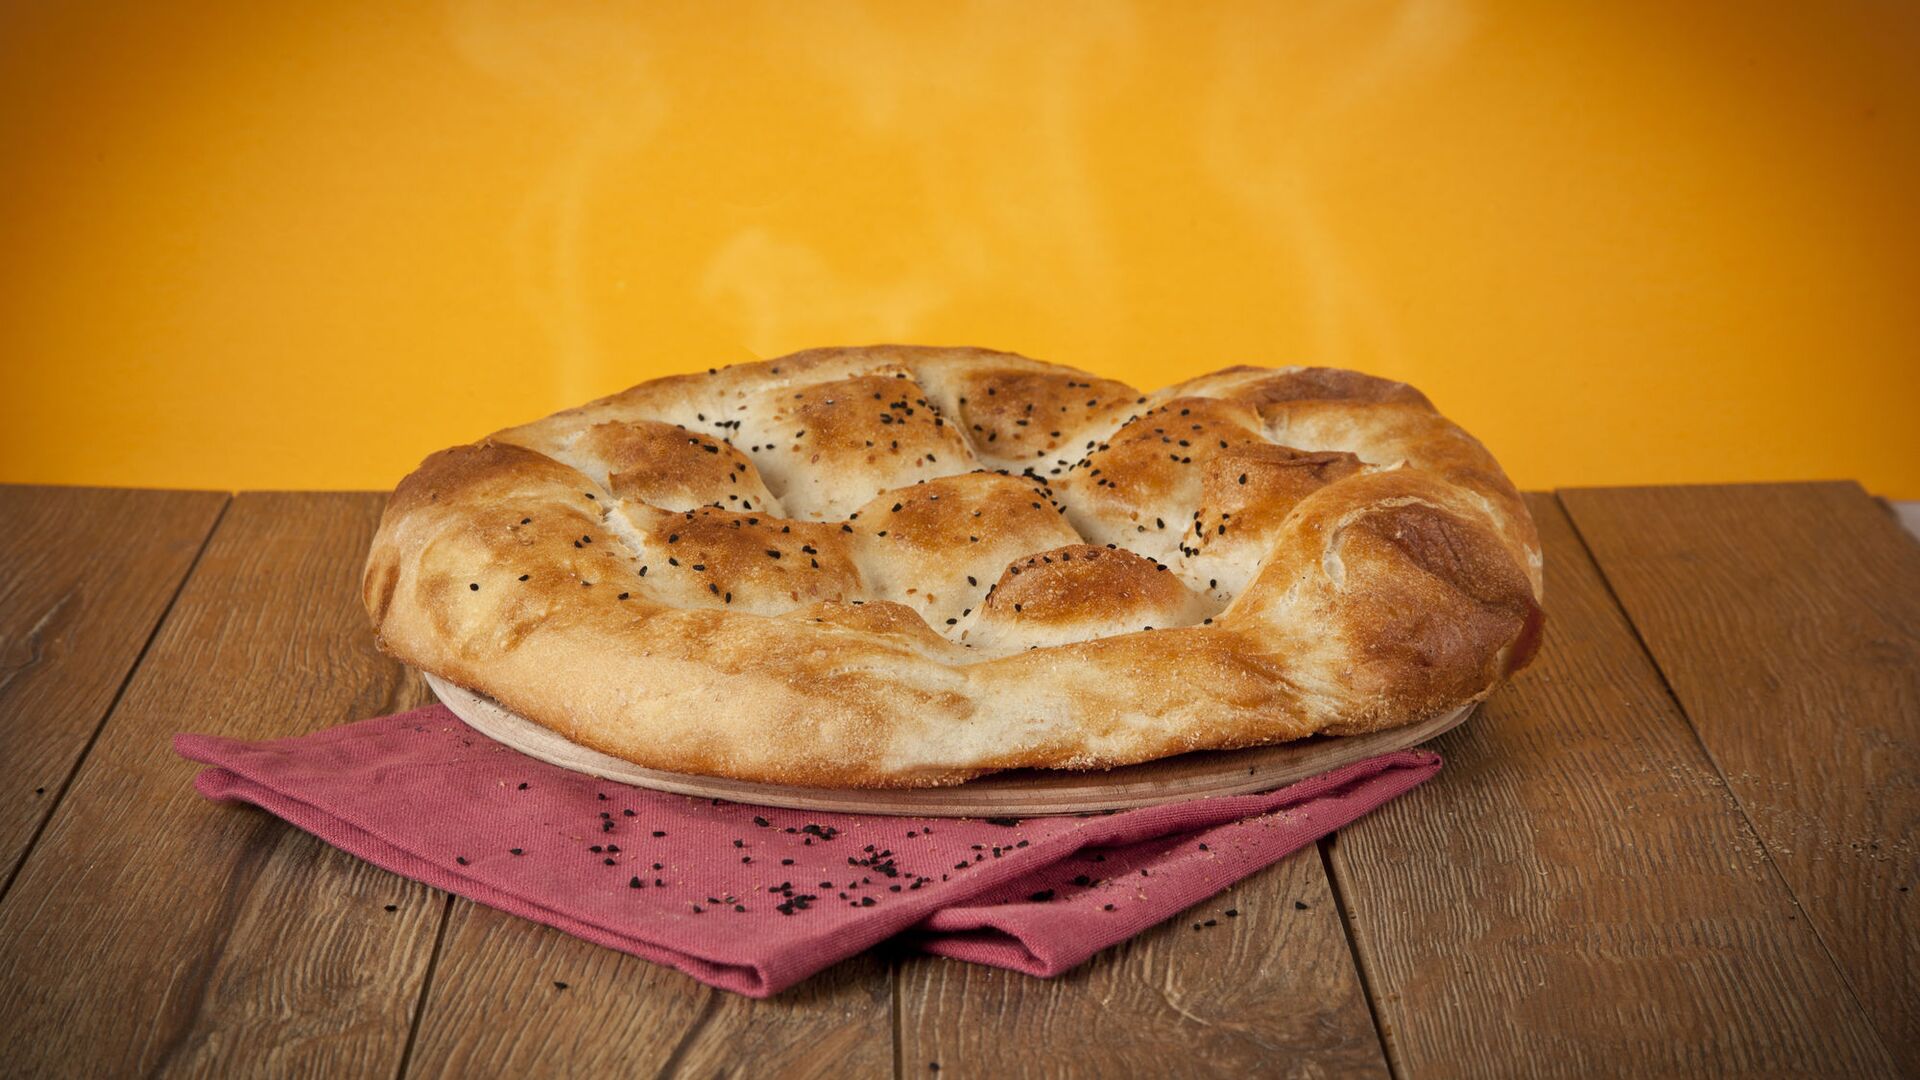 خبز - سبوتنيك عربي, 1920, 25.11.2021